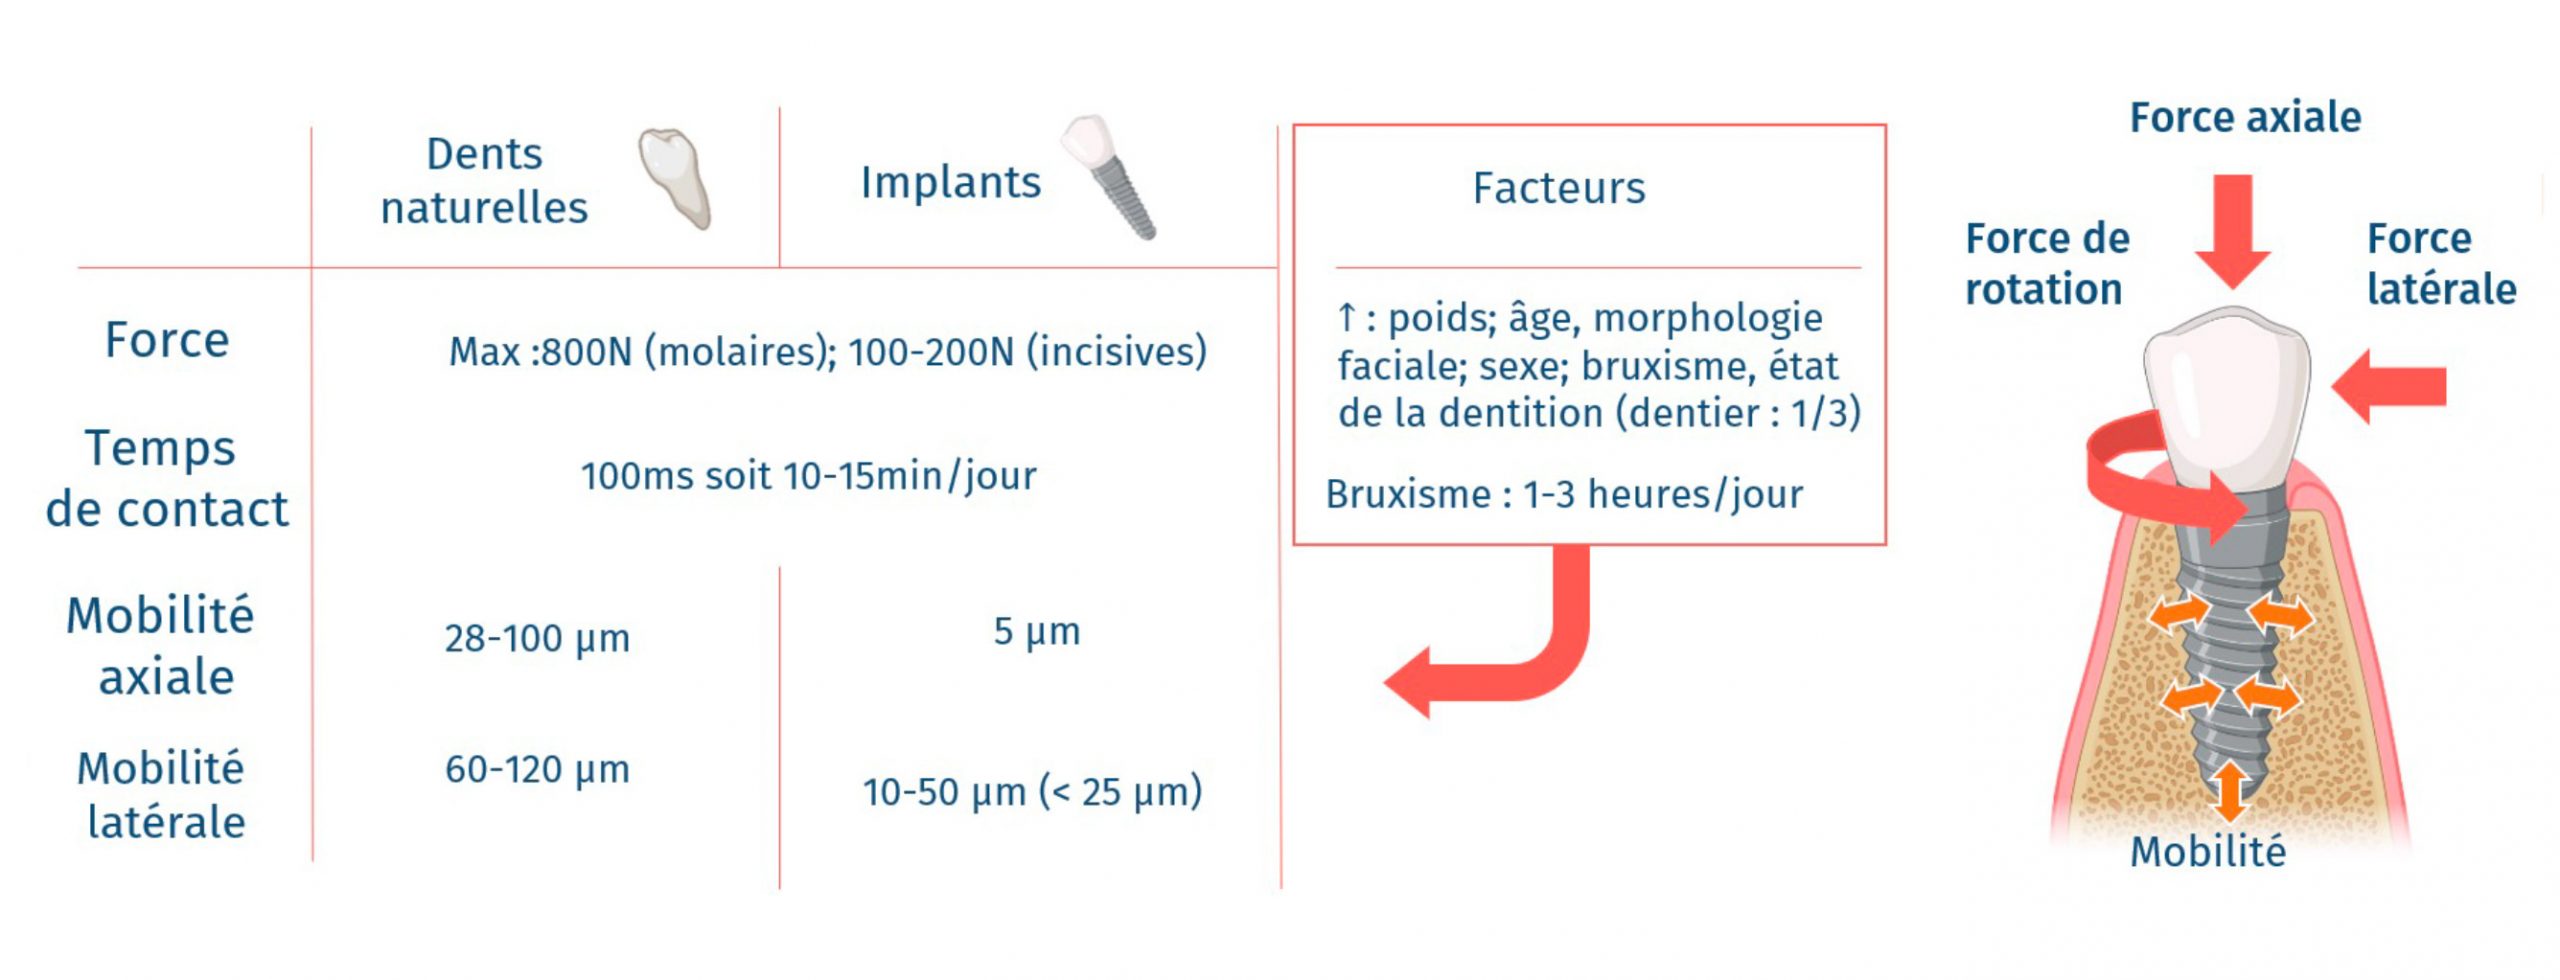 implants-vs-dents-naturelles